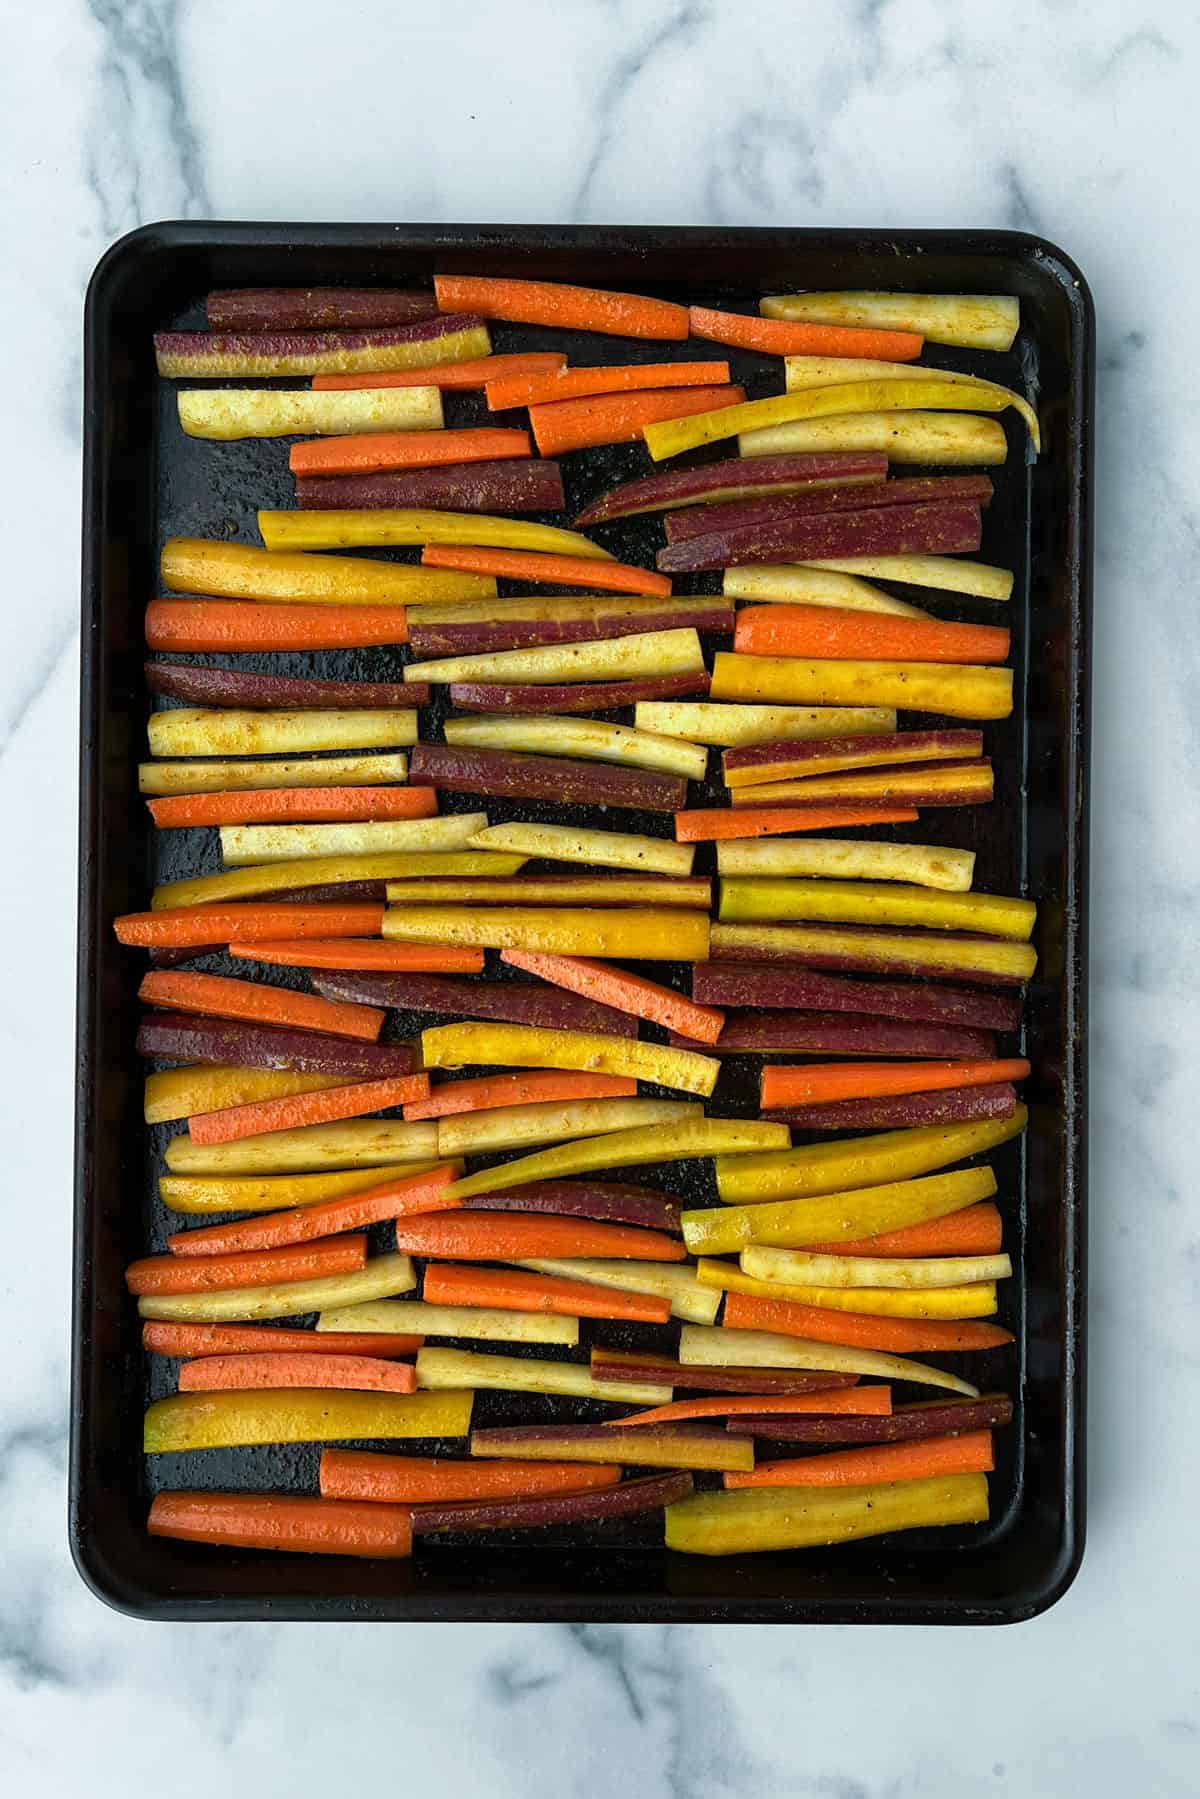 Rainbow carrot sticks arranged on a rimmed baking sheet.